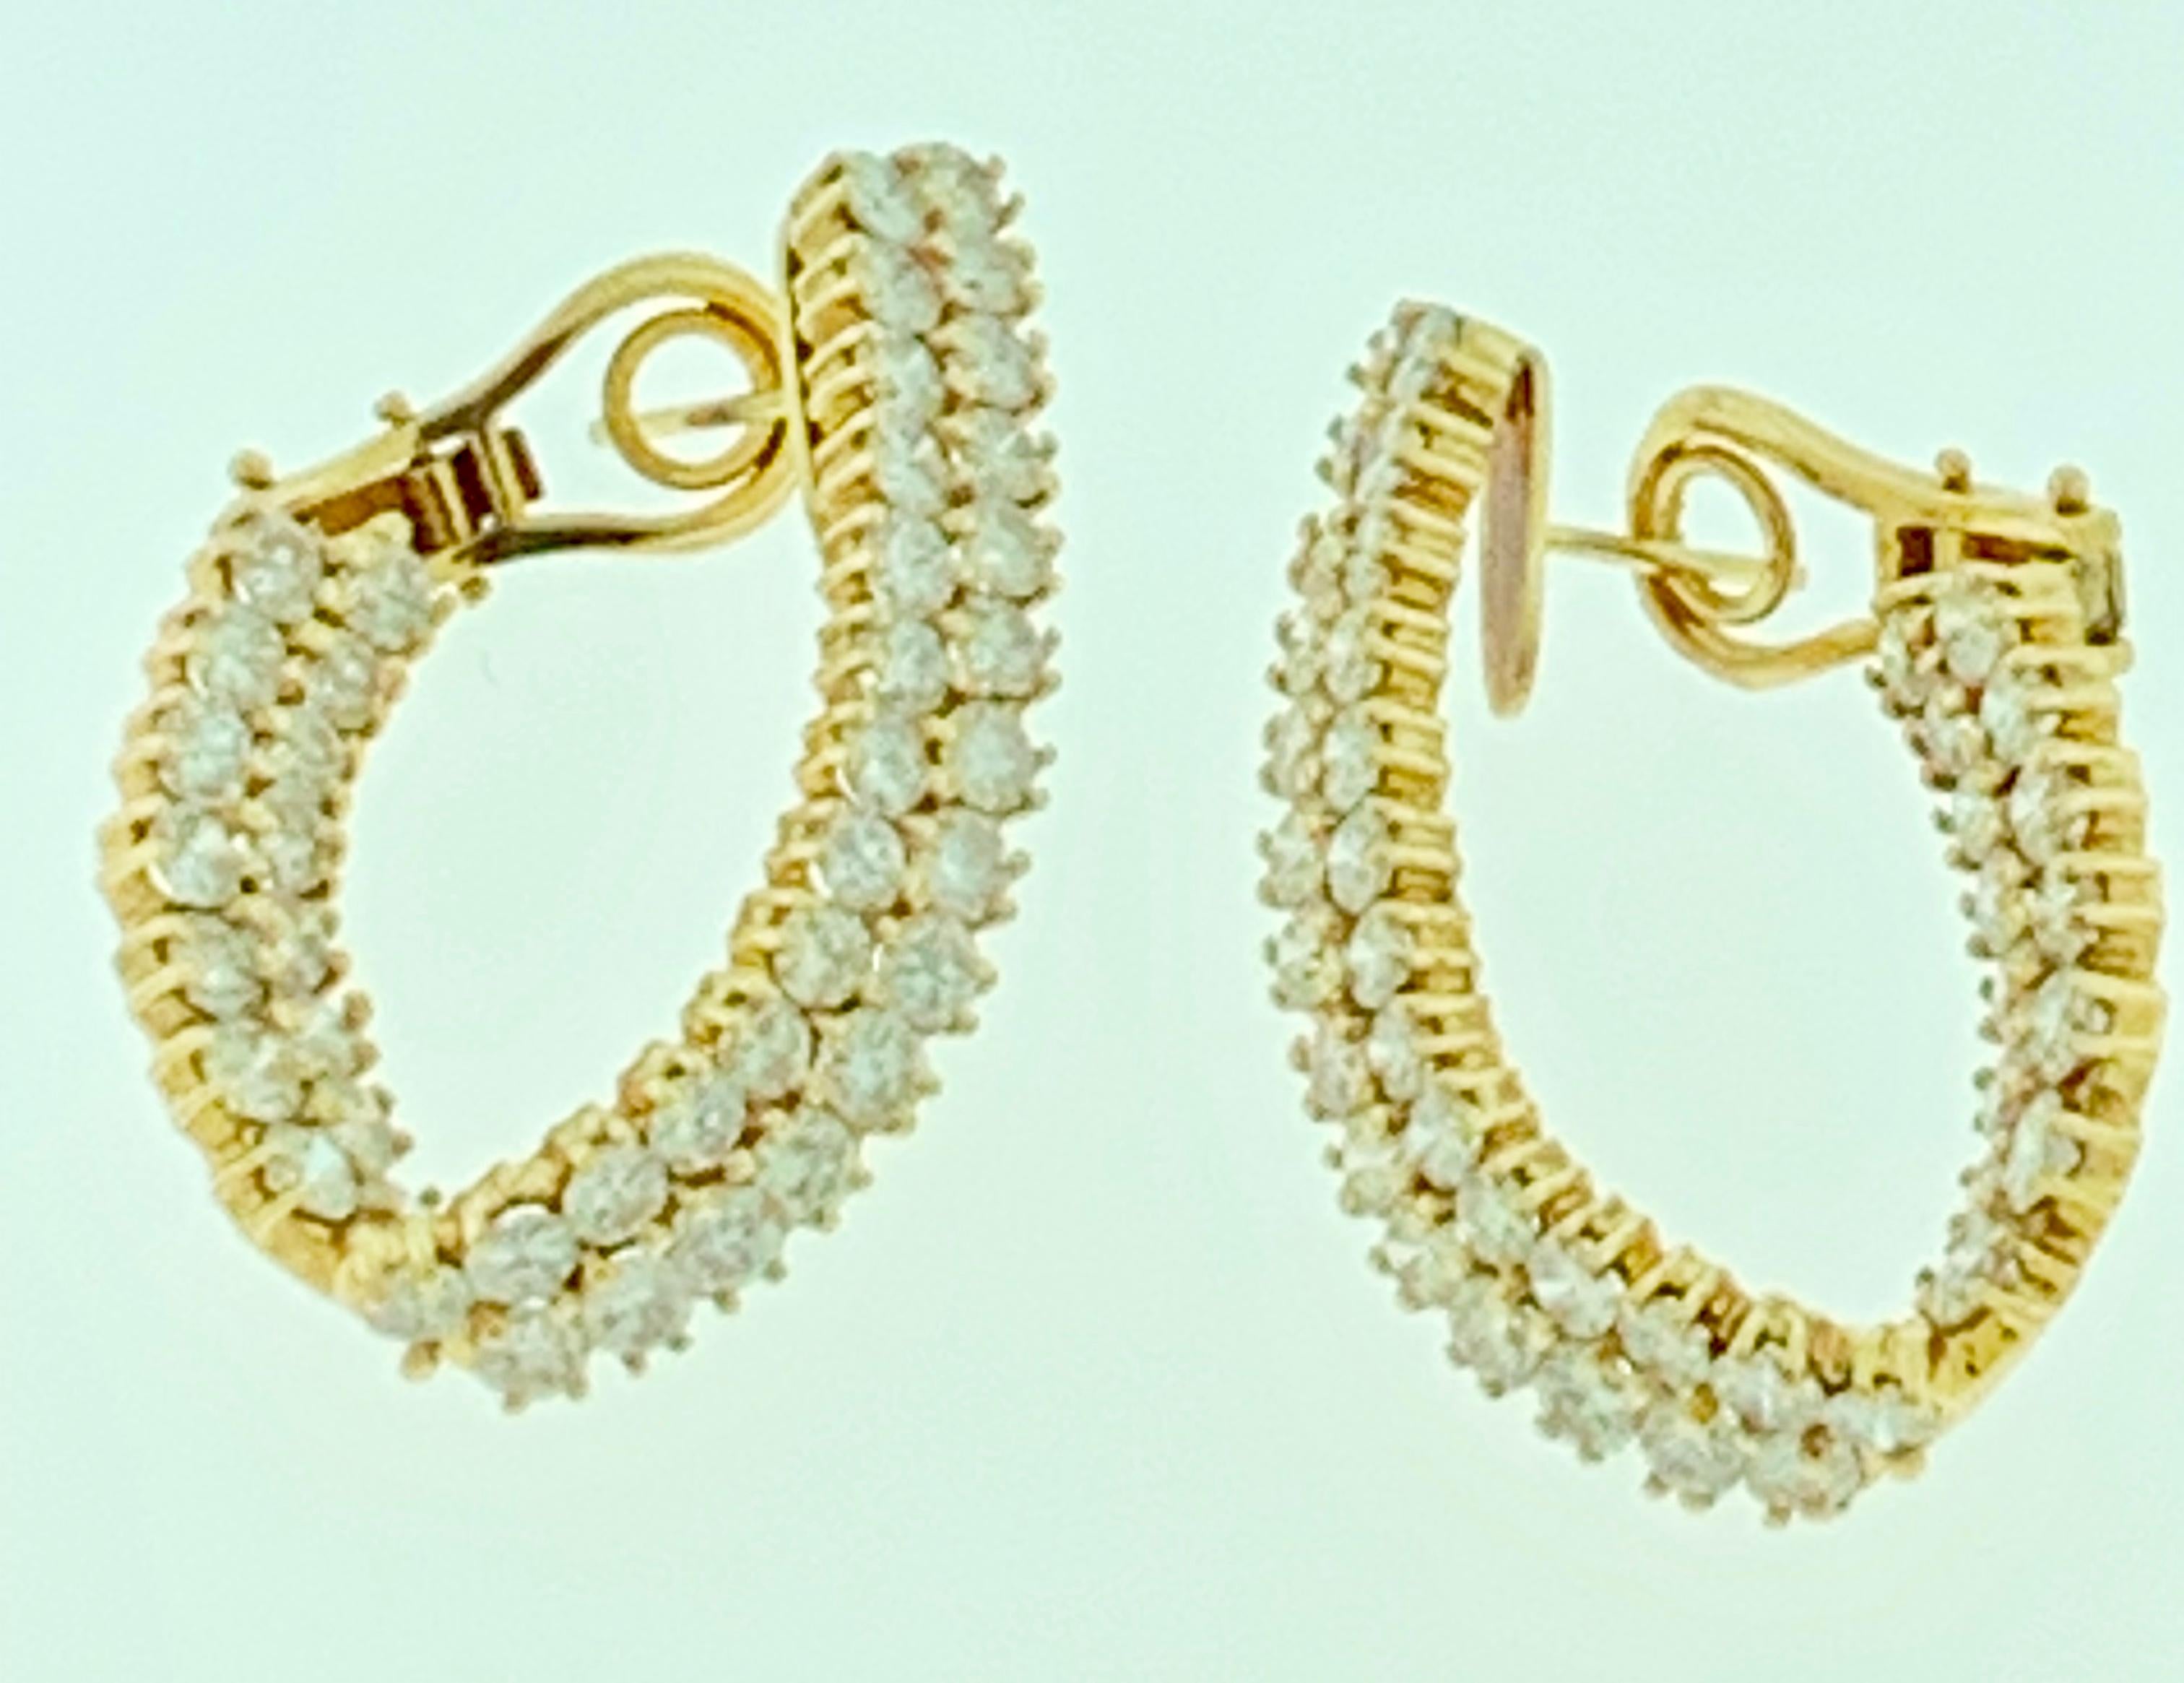 10 Ct Diamond VS Quality Hoop Earrings - Femmes en or jaune 18 kt 
Réalisées en or jaune 18 carats, ces superbes boucles d'oreilles en diamants sont orientées vers l'avant afin que vous puissiez voir les parties avant et arrière des anneaux 
C'est